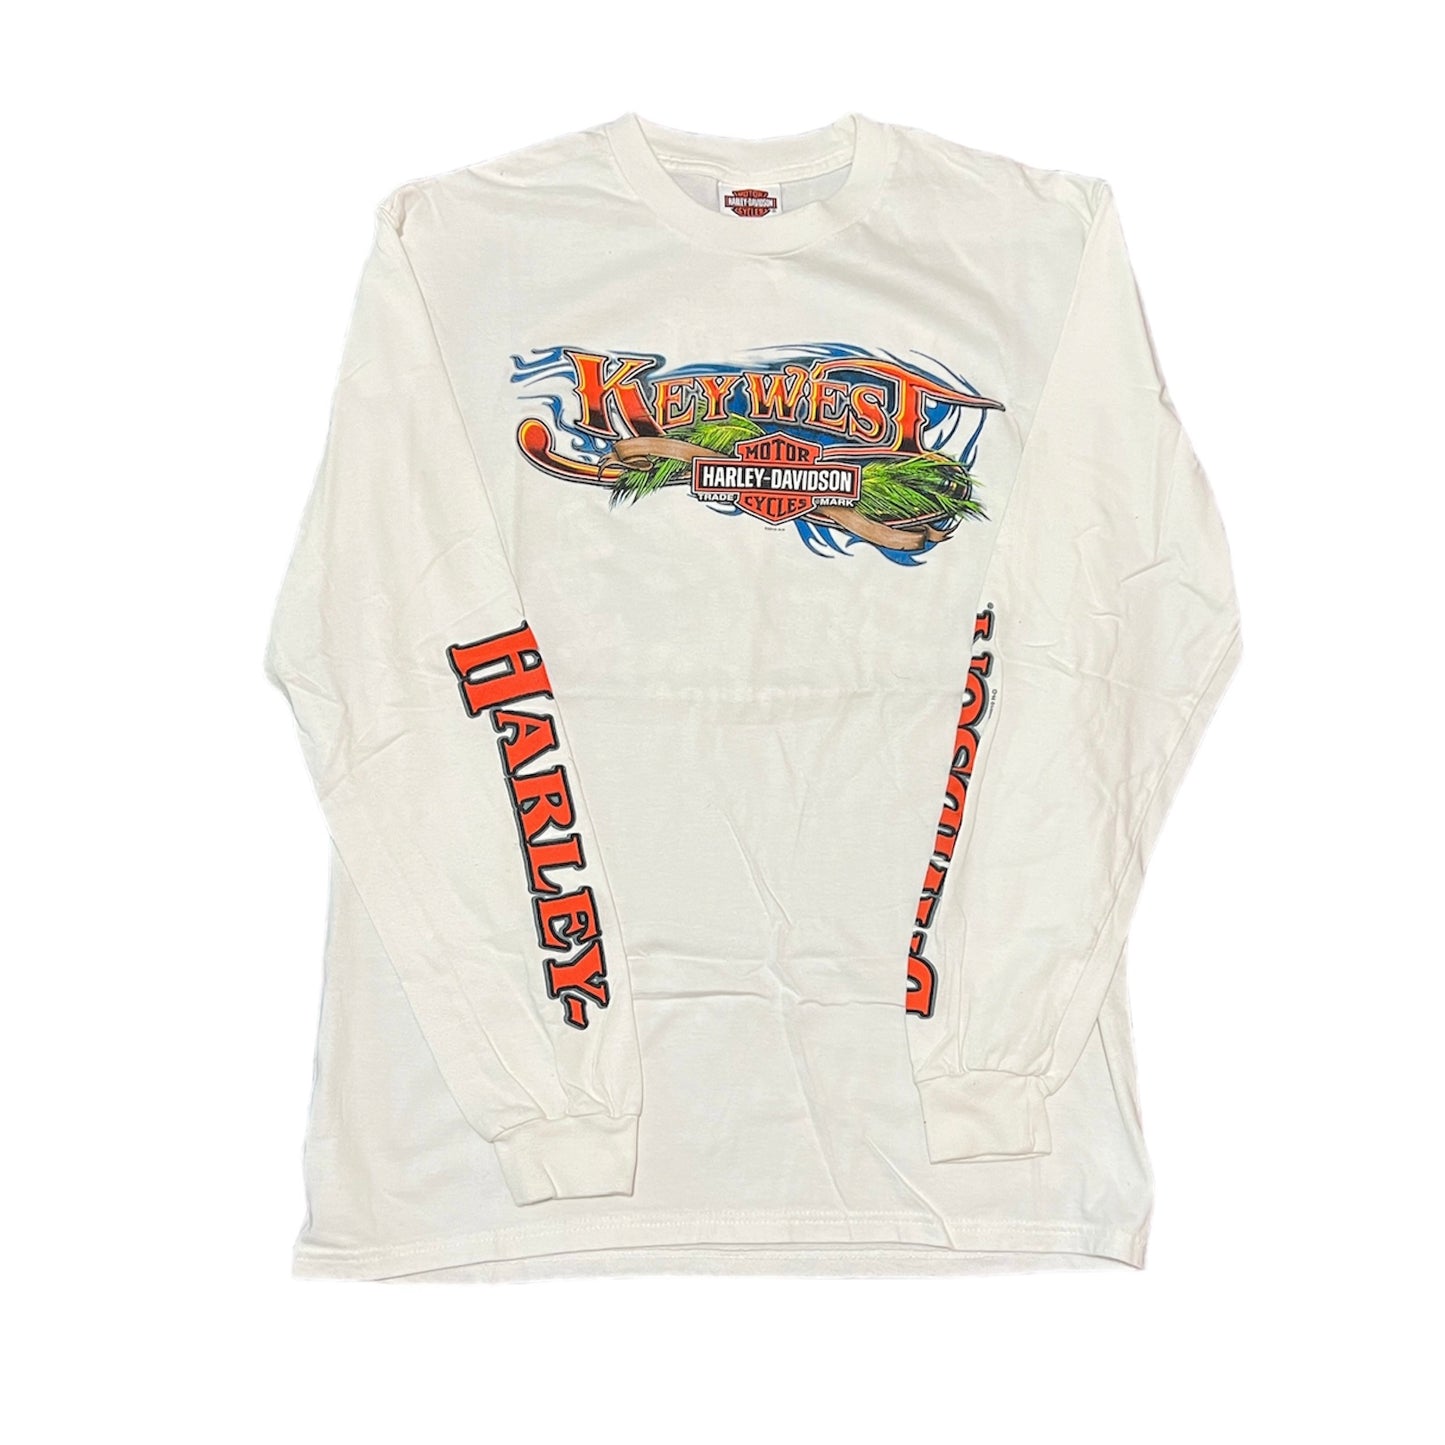 Harley Davidson Key West Long-Sleeve T-Shirt Size Large